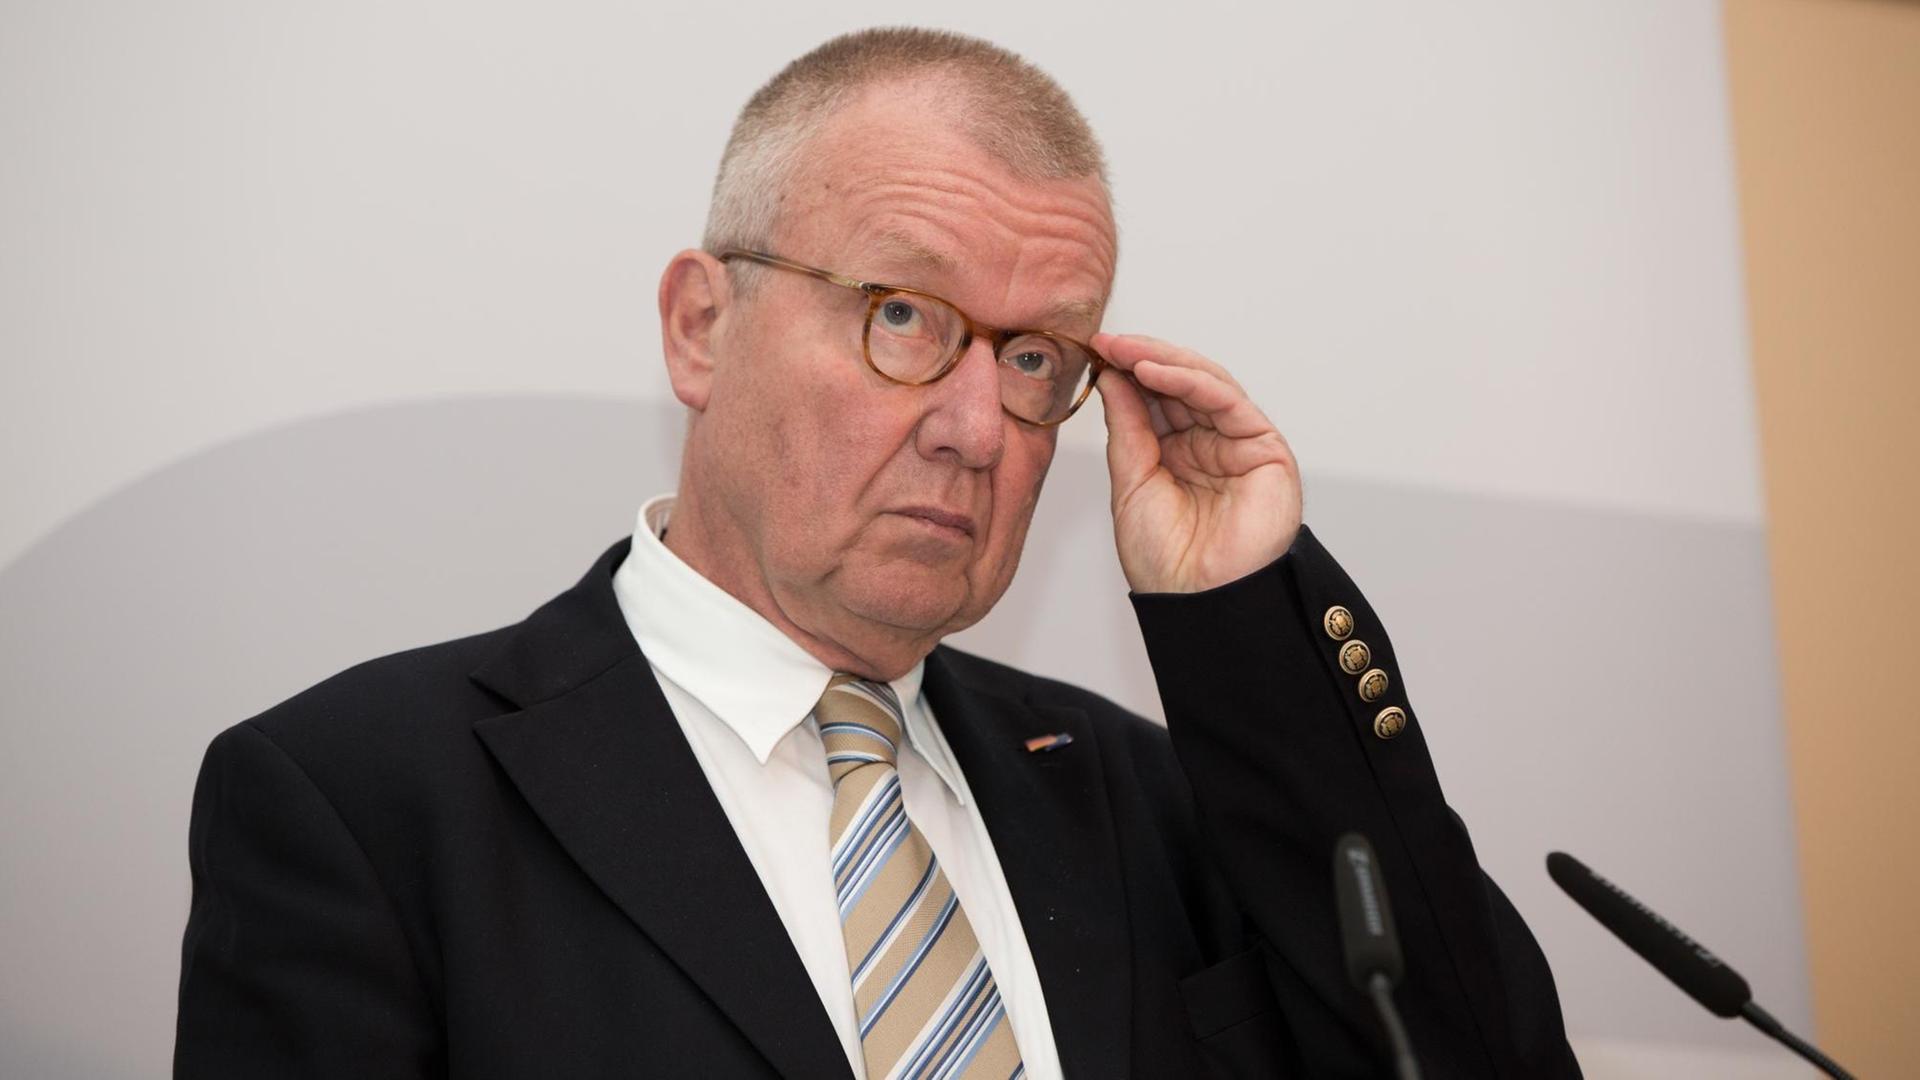 Das Bild zeigt Ruprecht Polenz, Präsident Deutsche Gesellschaft für Osteuropakunde. Er fasst sich vor grauem Hintergrund mit der linken Hand an seine Brille.